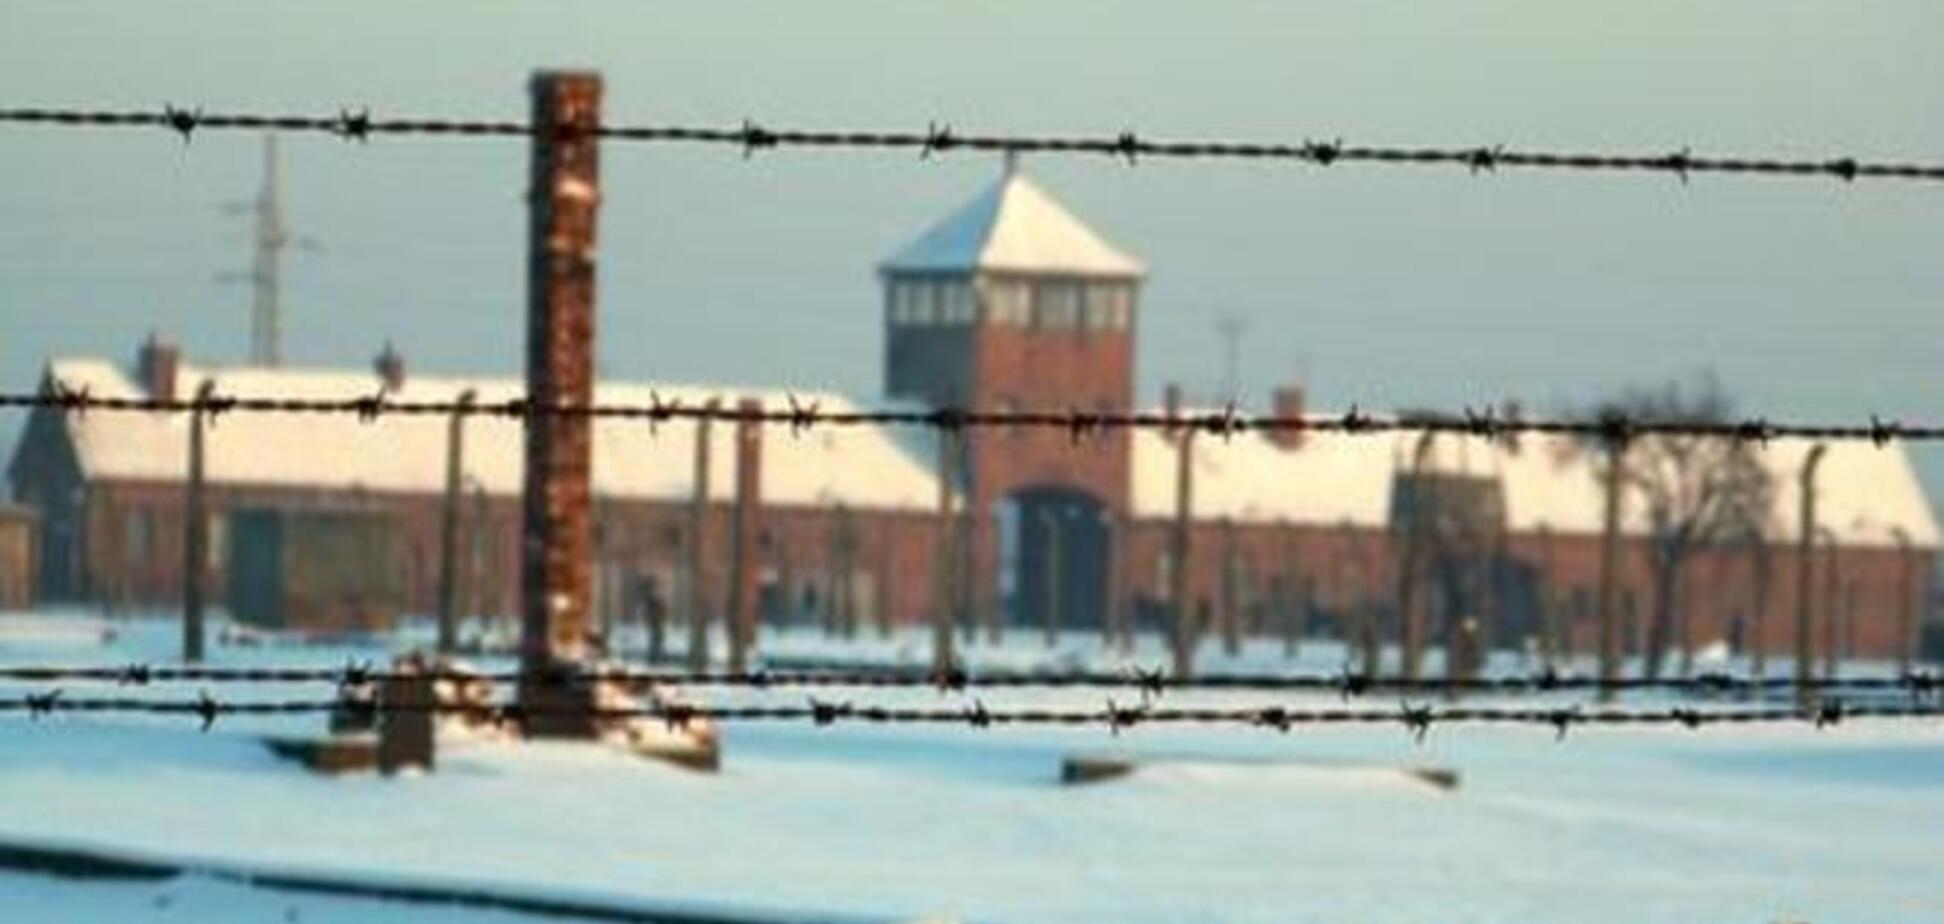 70-летие со дня освобождения Освенцима: хроника событий